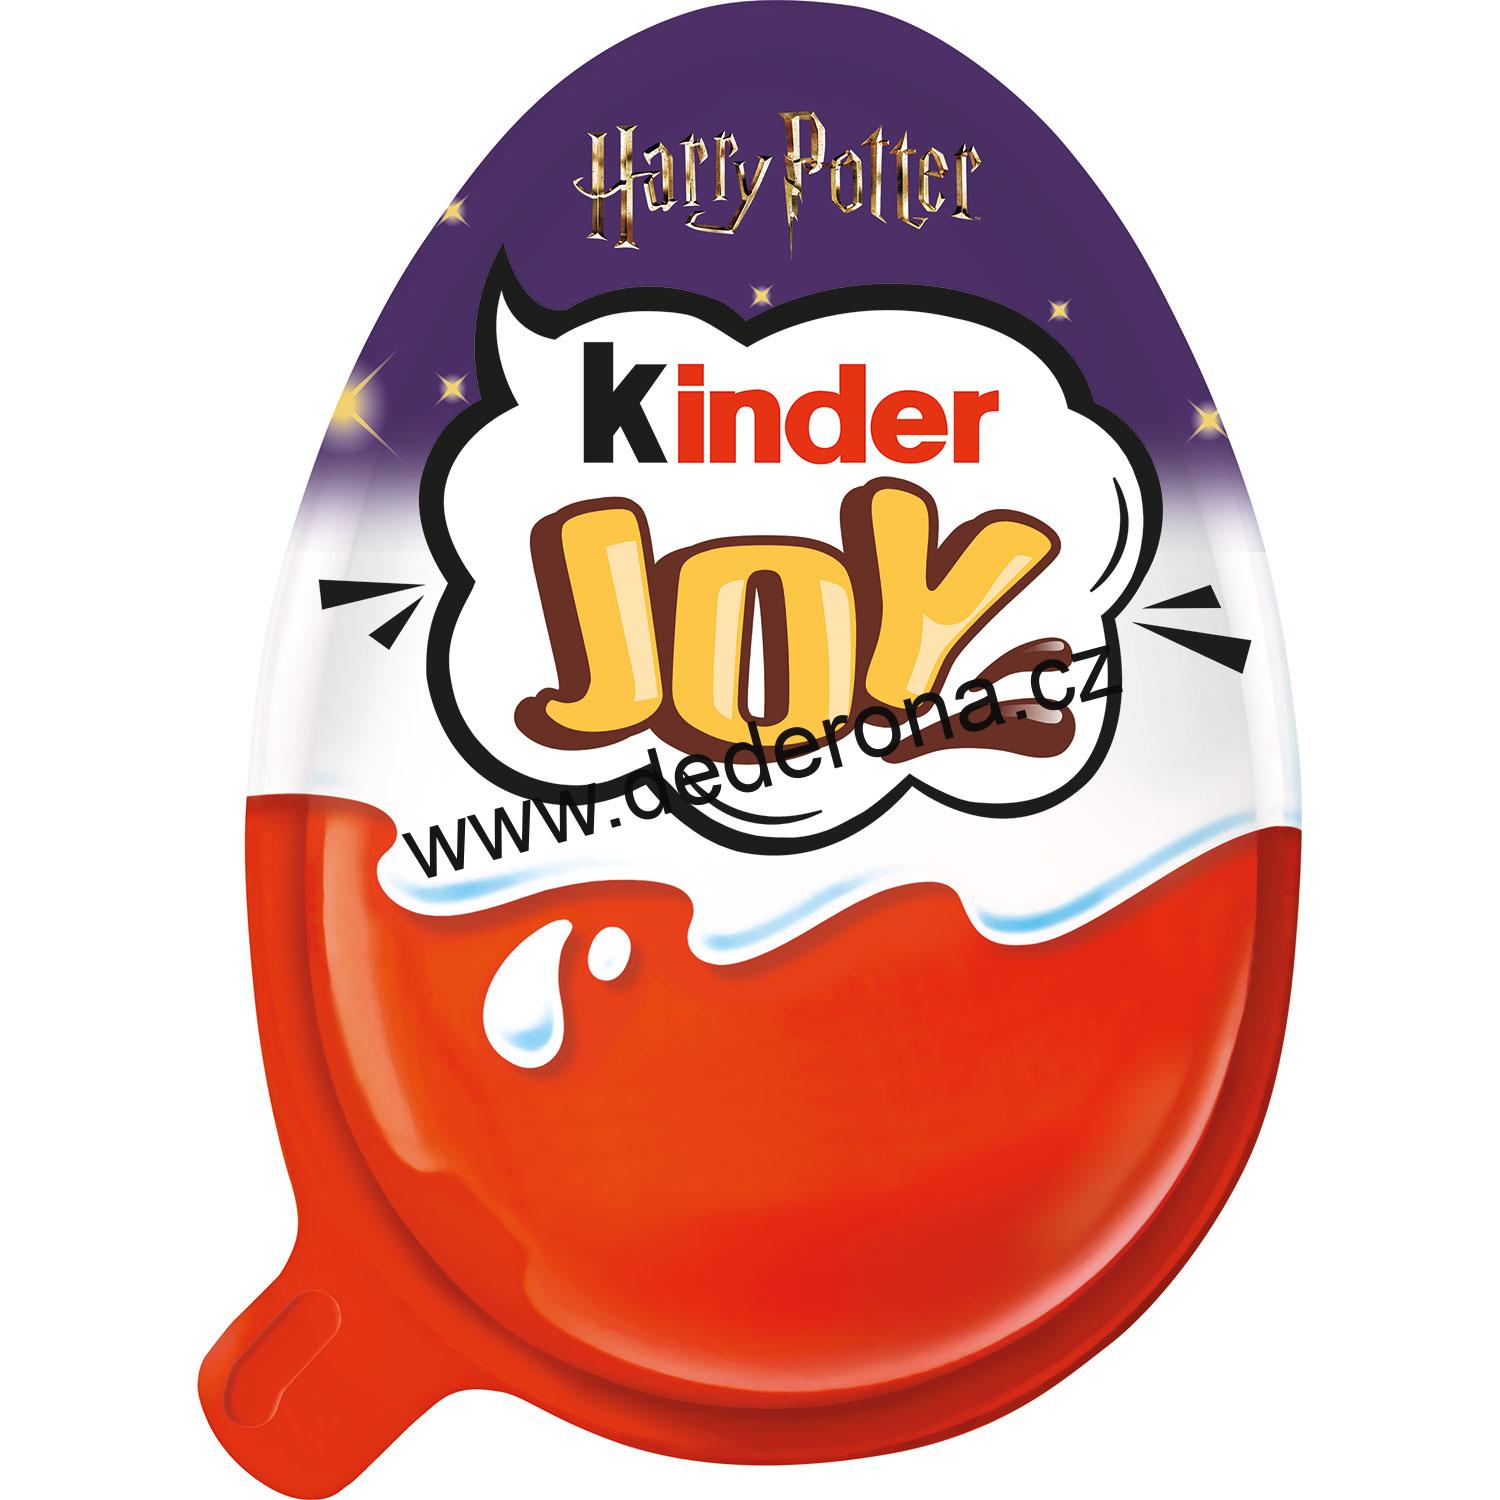 KINDER - JOY vajíčko s překvapením "Funko HARRY POTTER" - Německo!